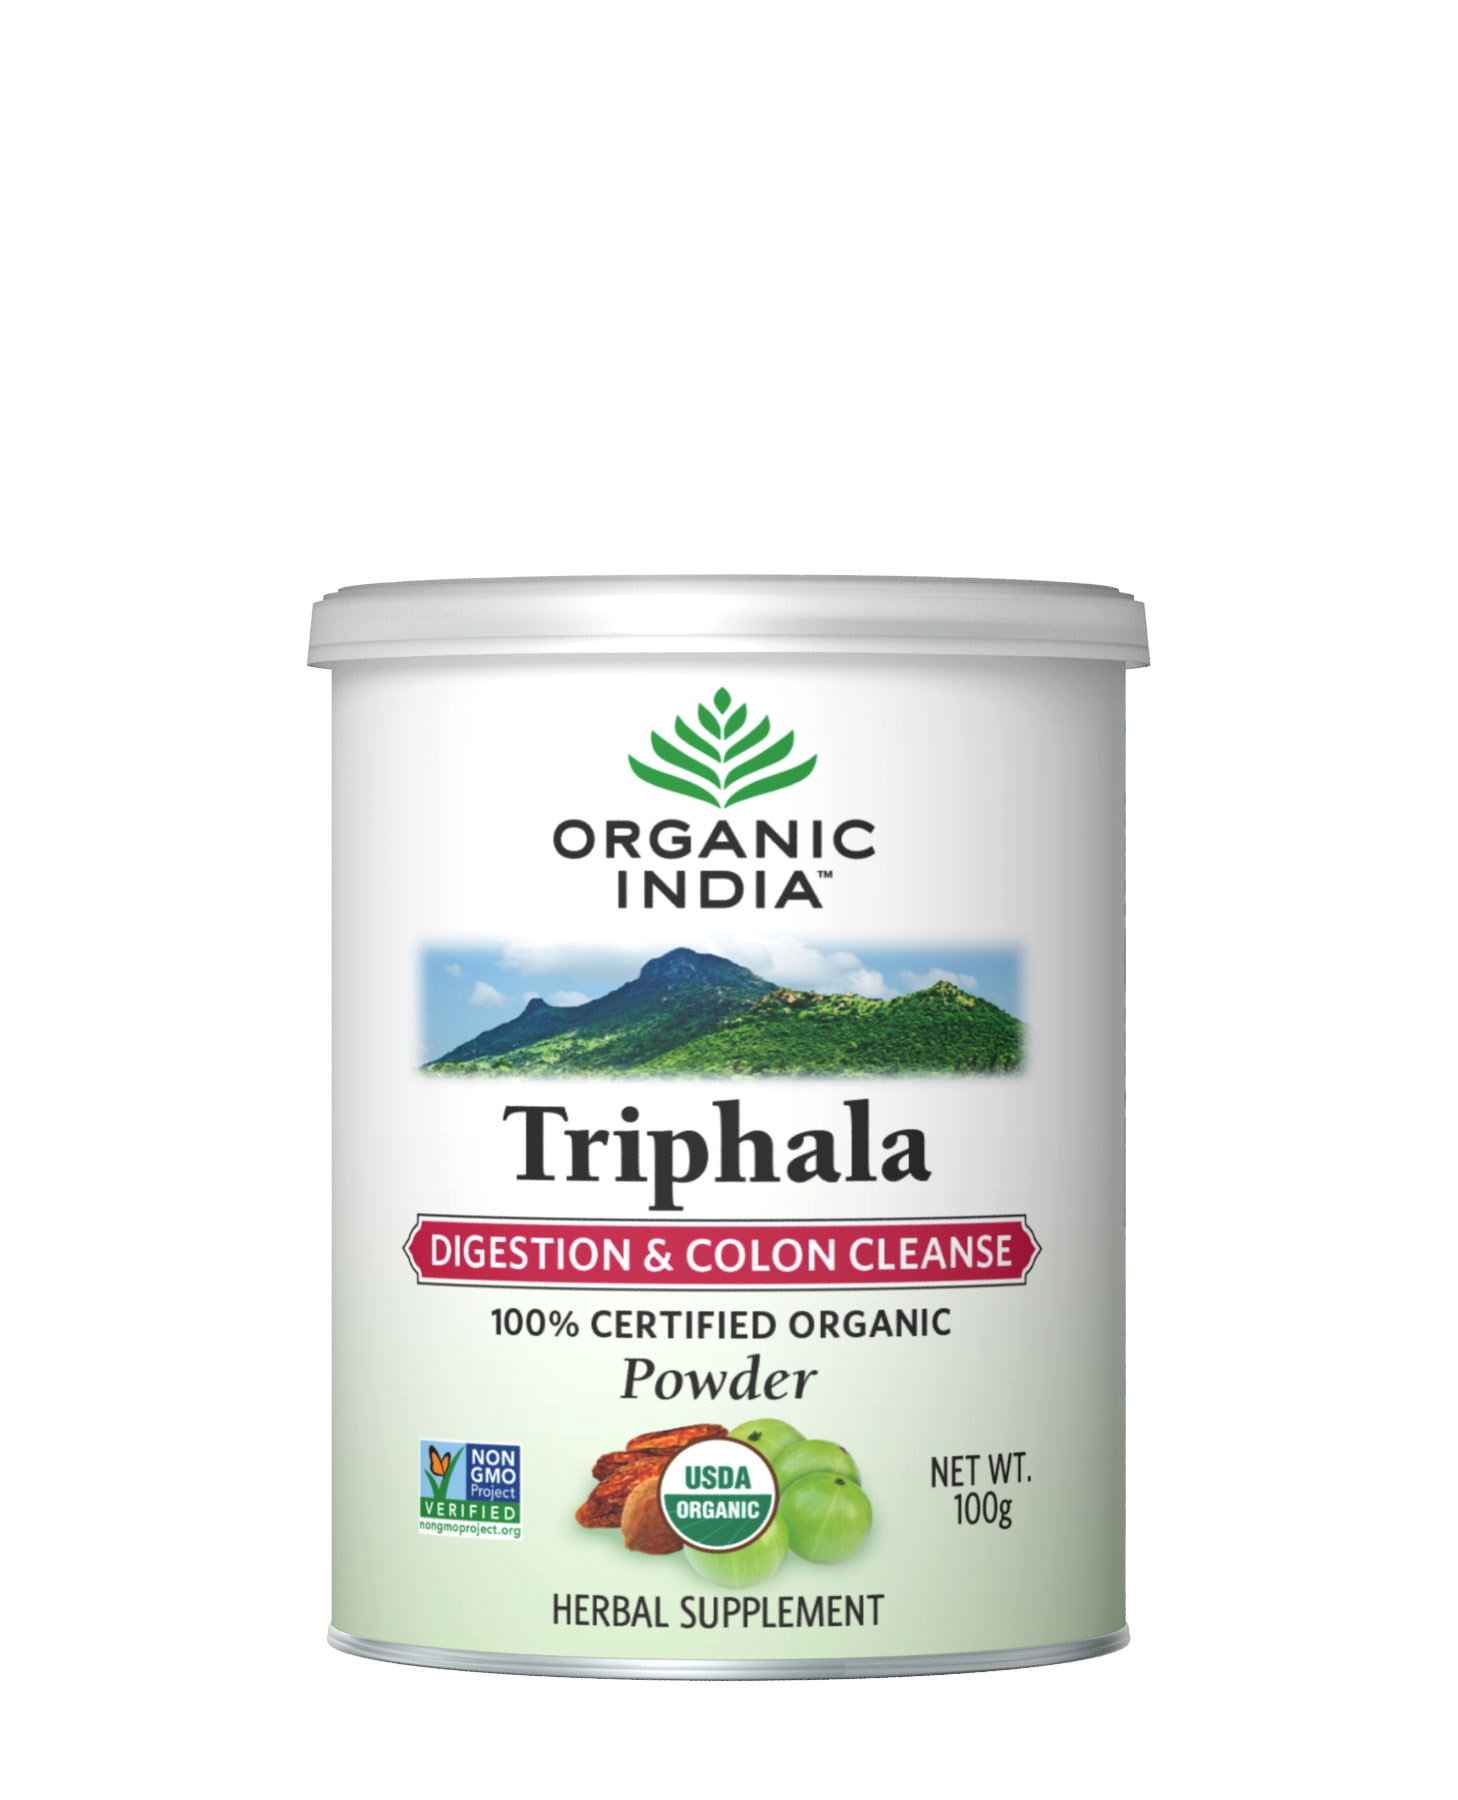 Buy Organic India Triphala Powder at Best Price Online